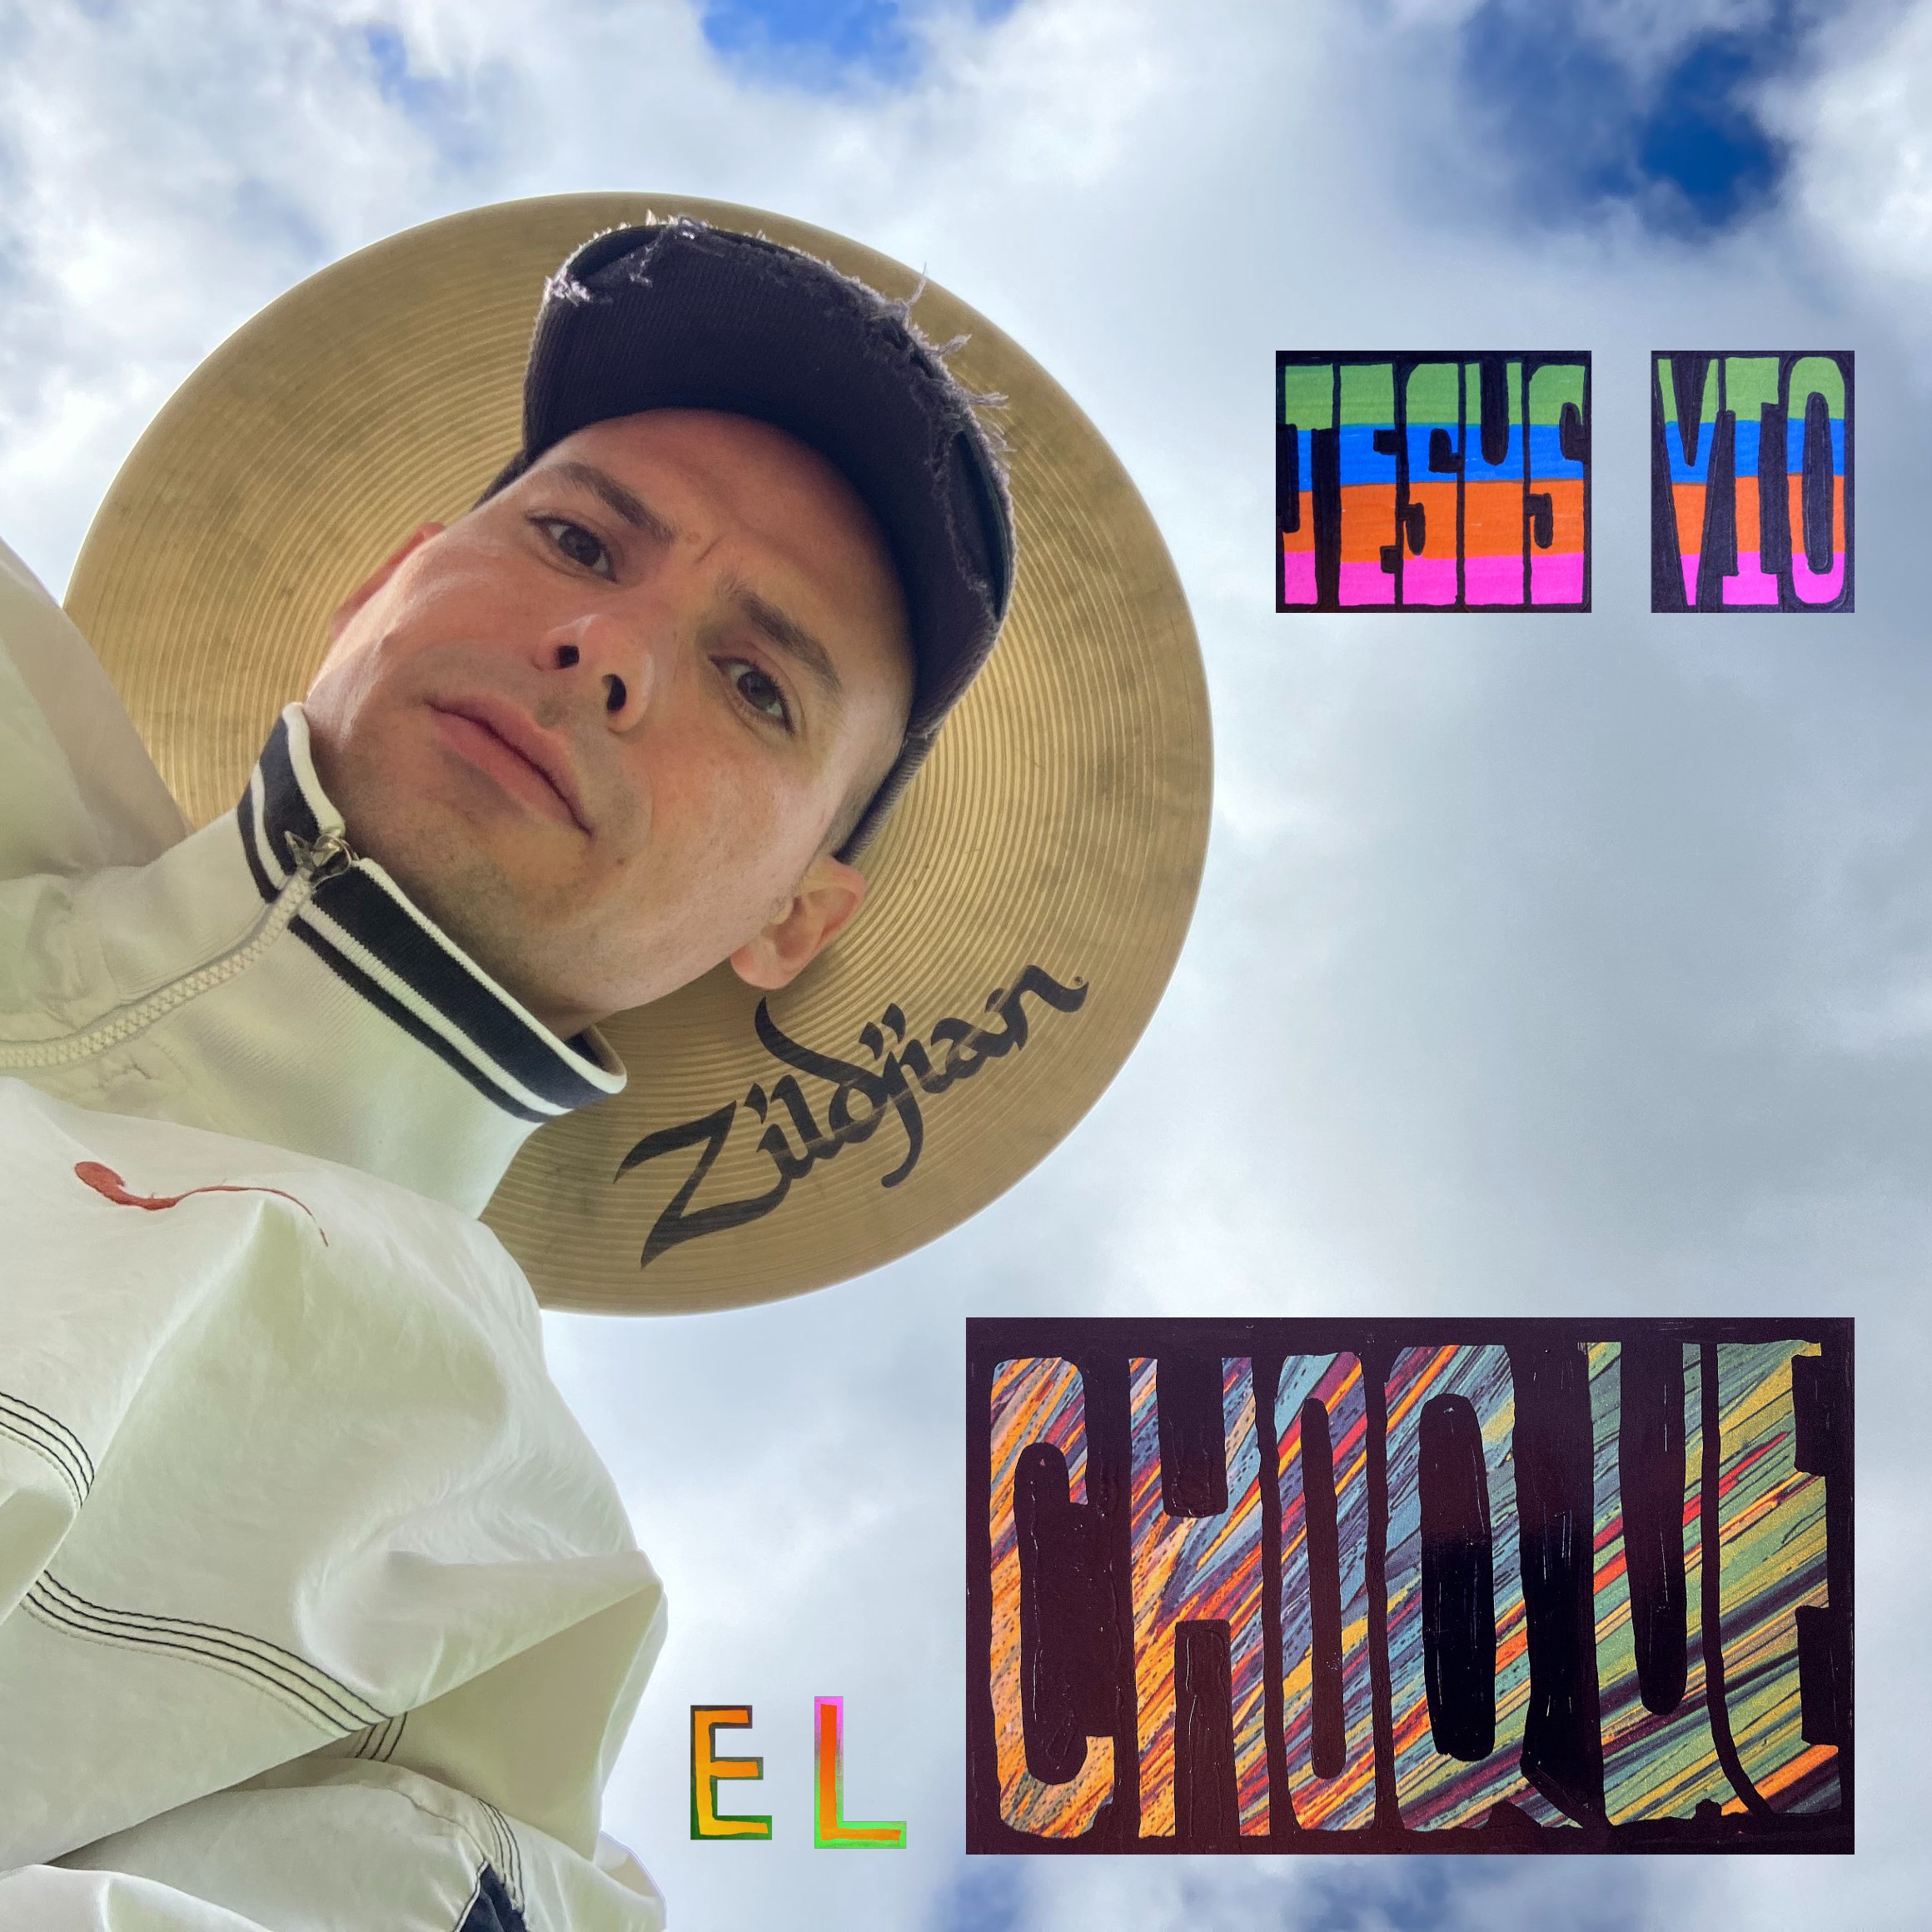 El Choque Album Cover (1).jpg